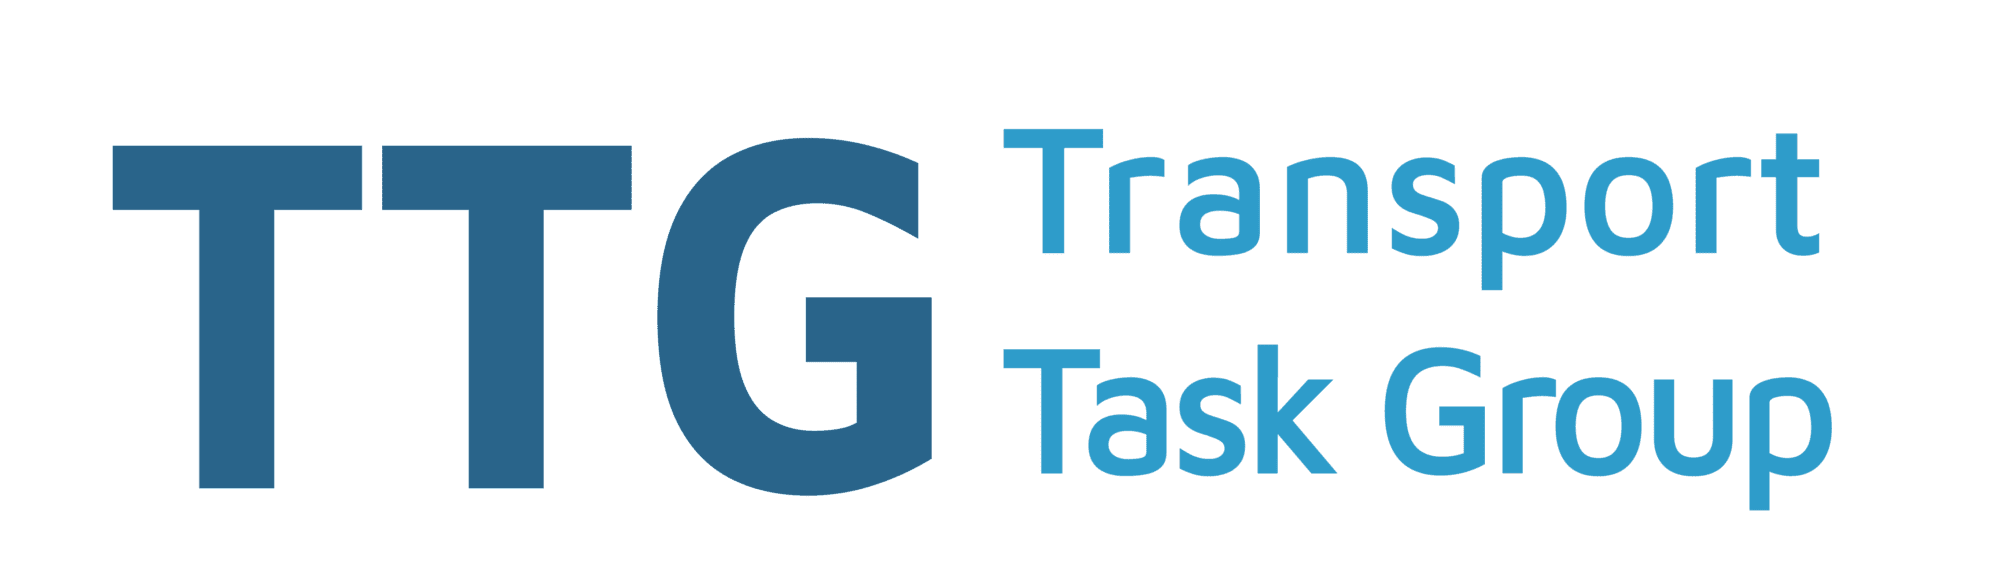 Transport Task Group